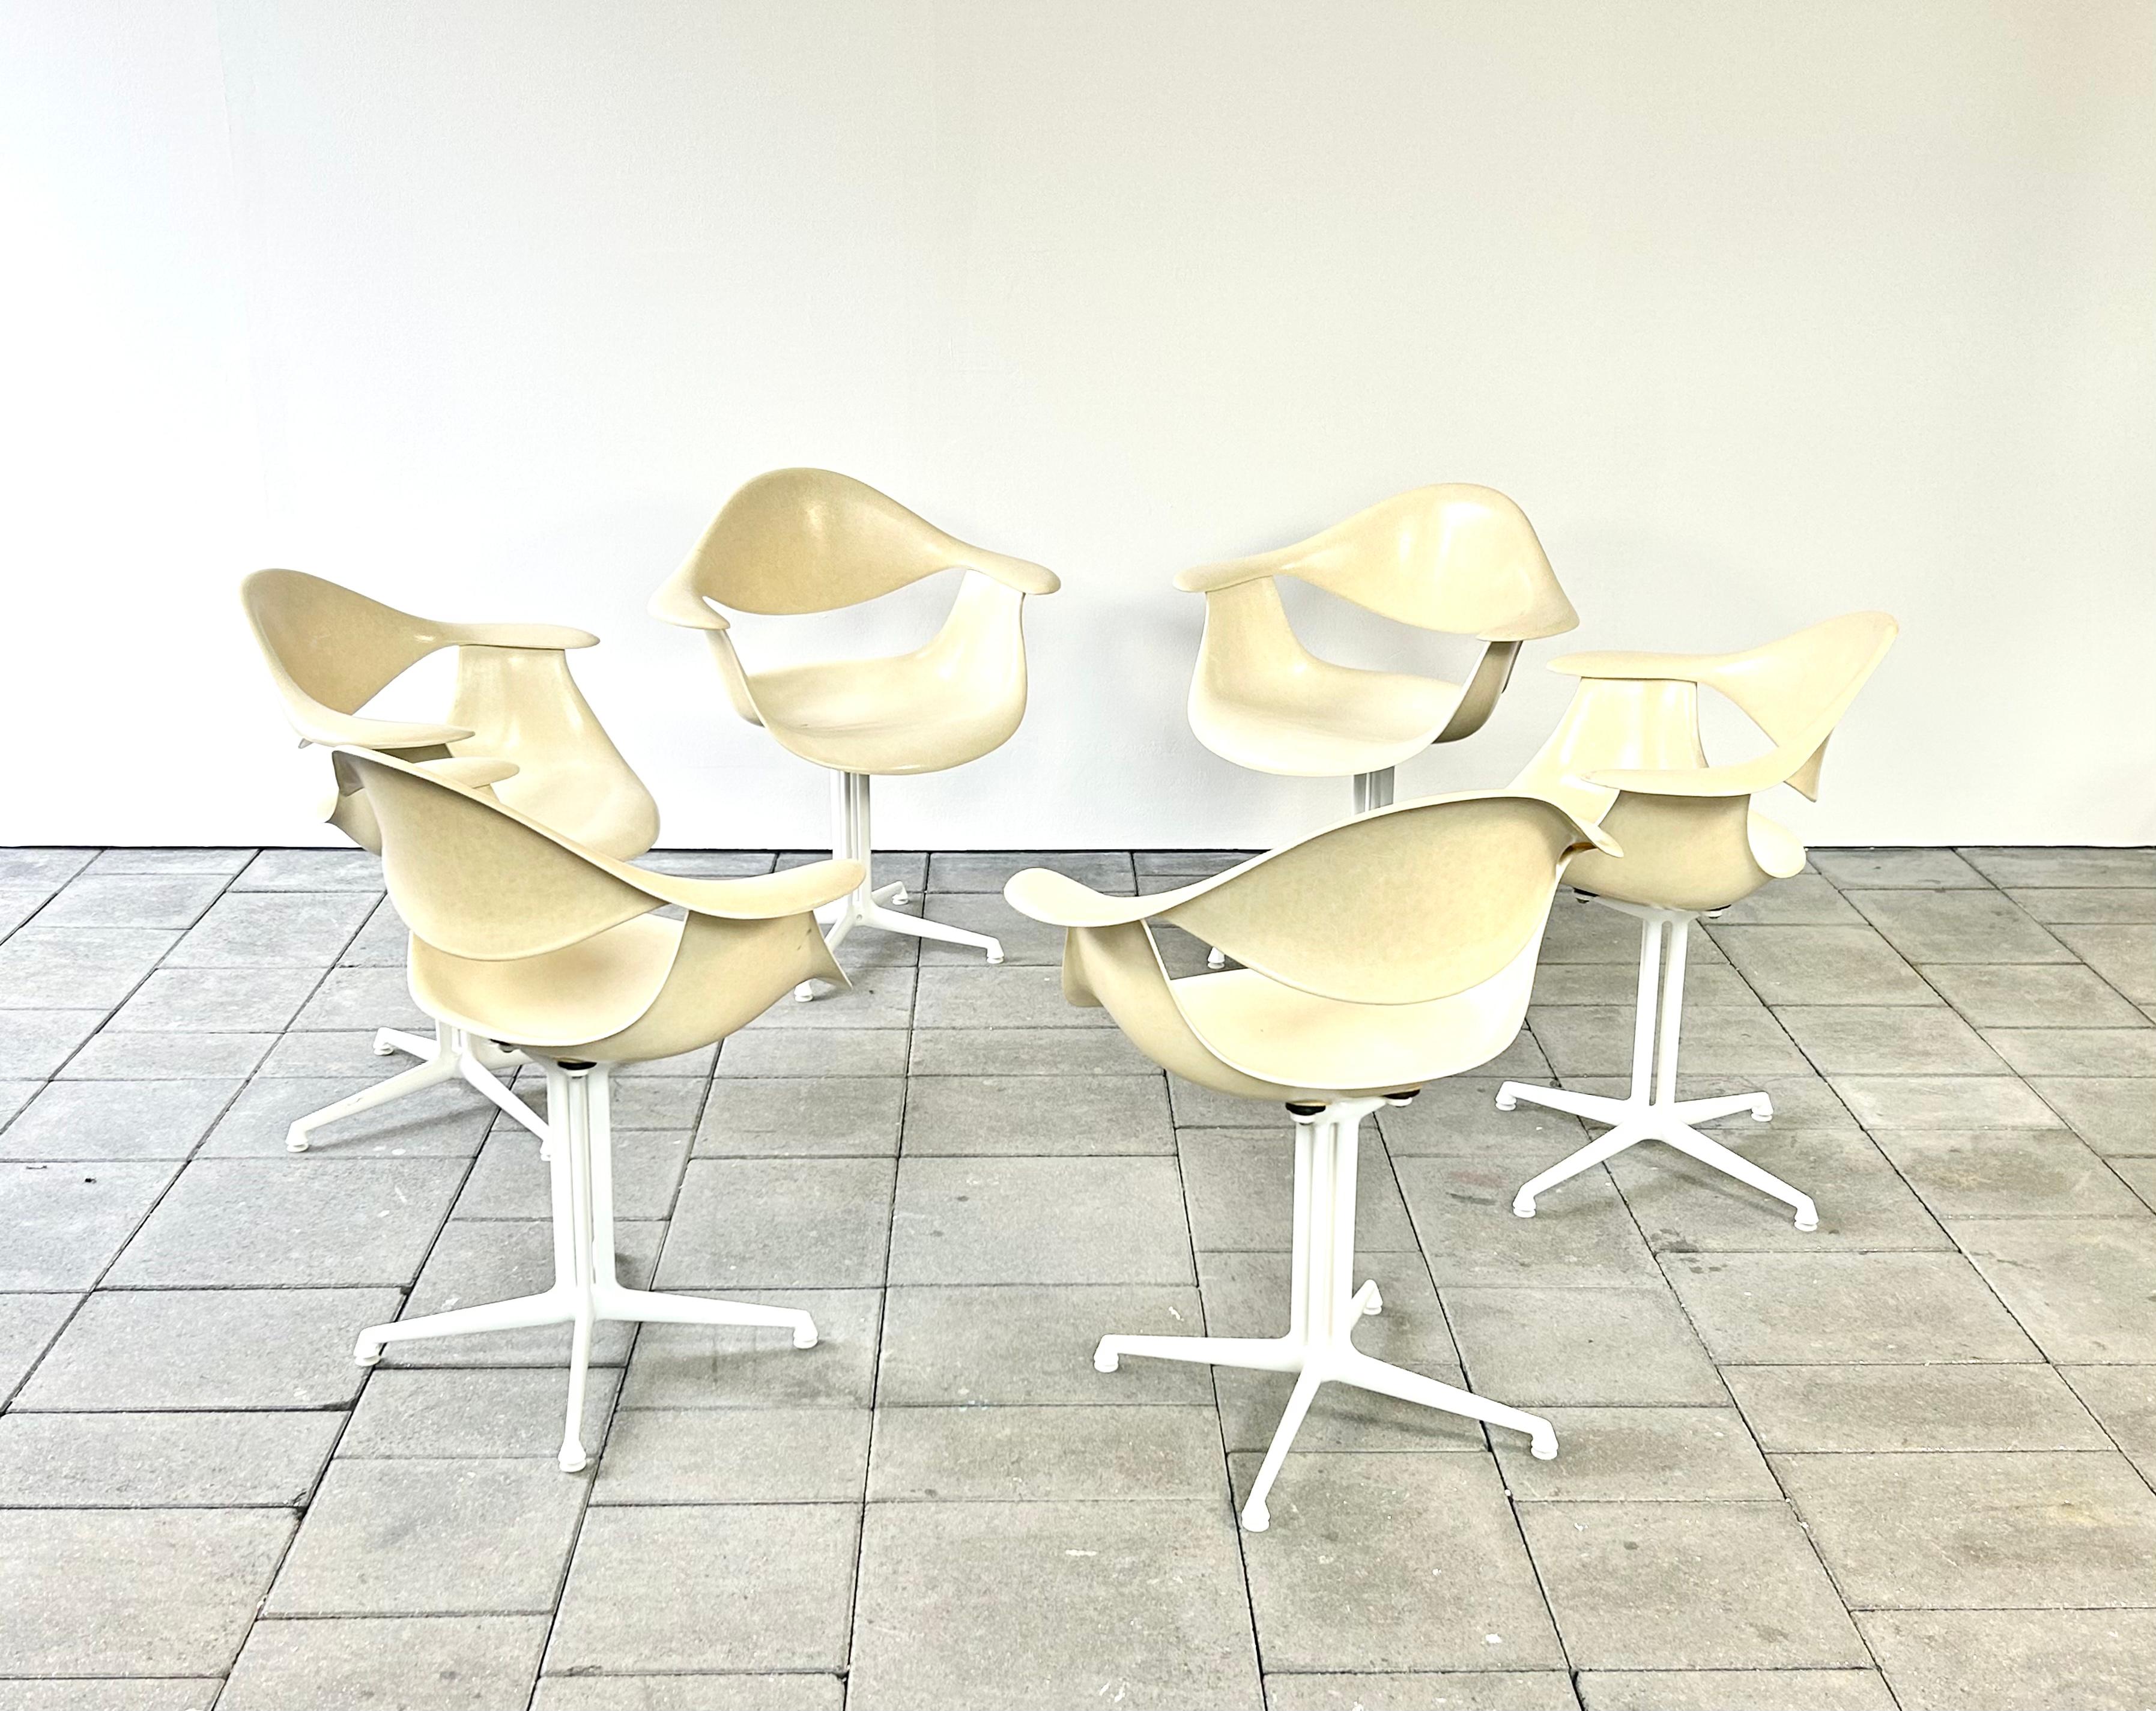 Schöner Satz von 6 Herman Miller DAF Stühlen aus Fiberglas, entworfen von George Nelson.

Der DAF-Stuhl eignet sich hervorragend als Esszimmerstuhl und passt aufgrund seines organischen Designs perfekt zu großen Esstischen der damaligen Zeit. 

Der